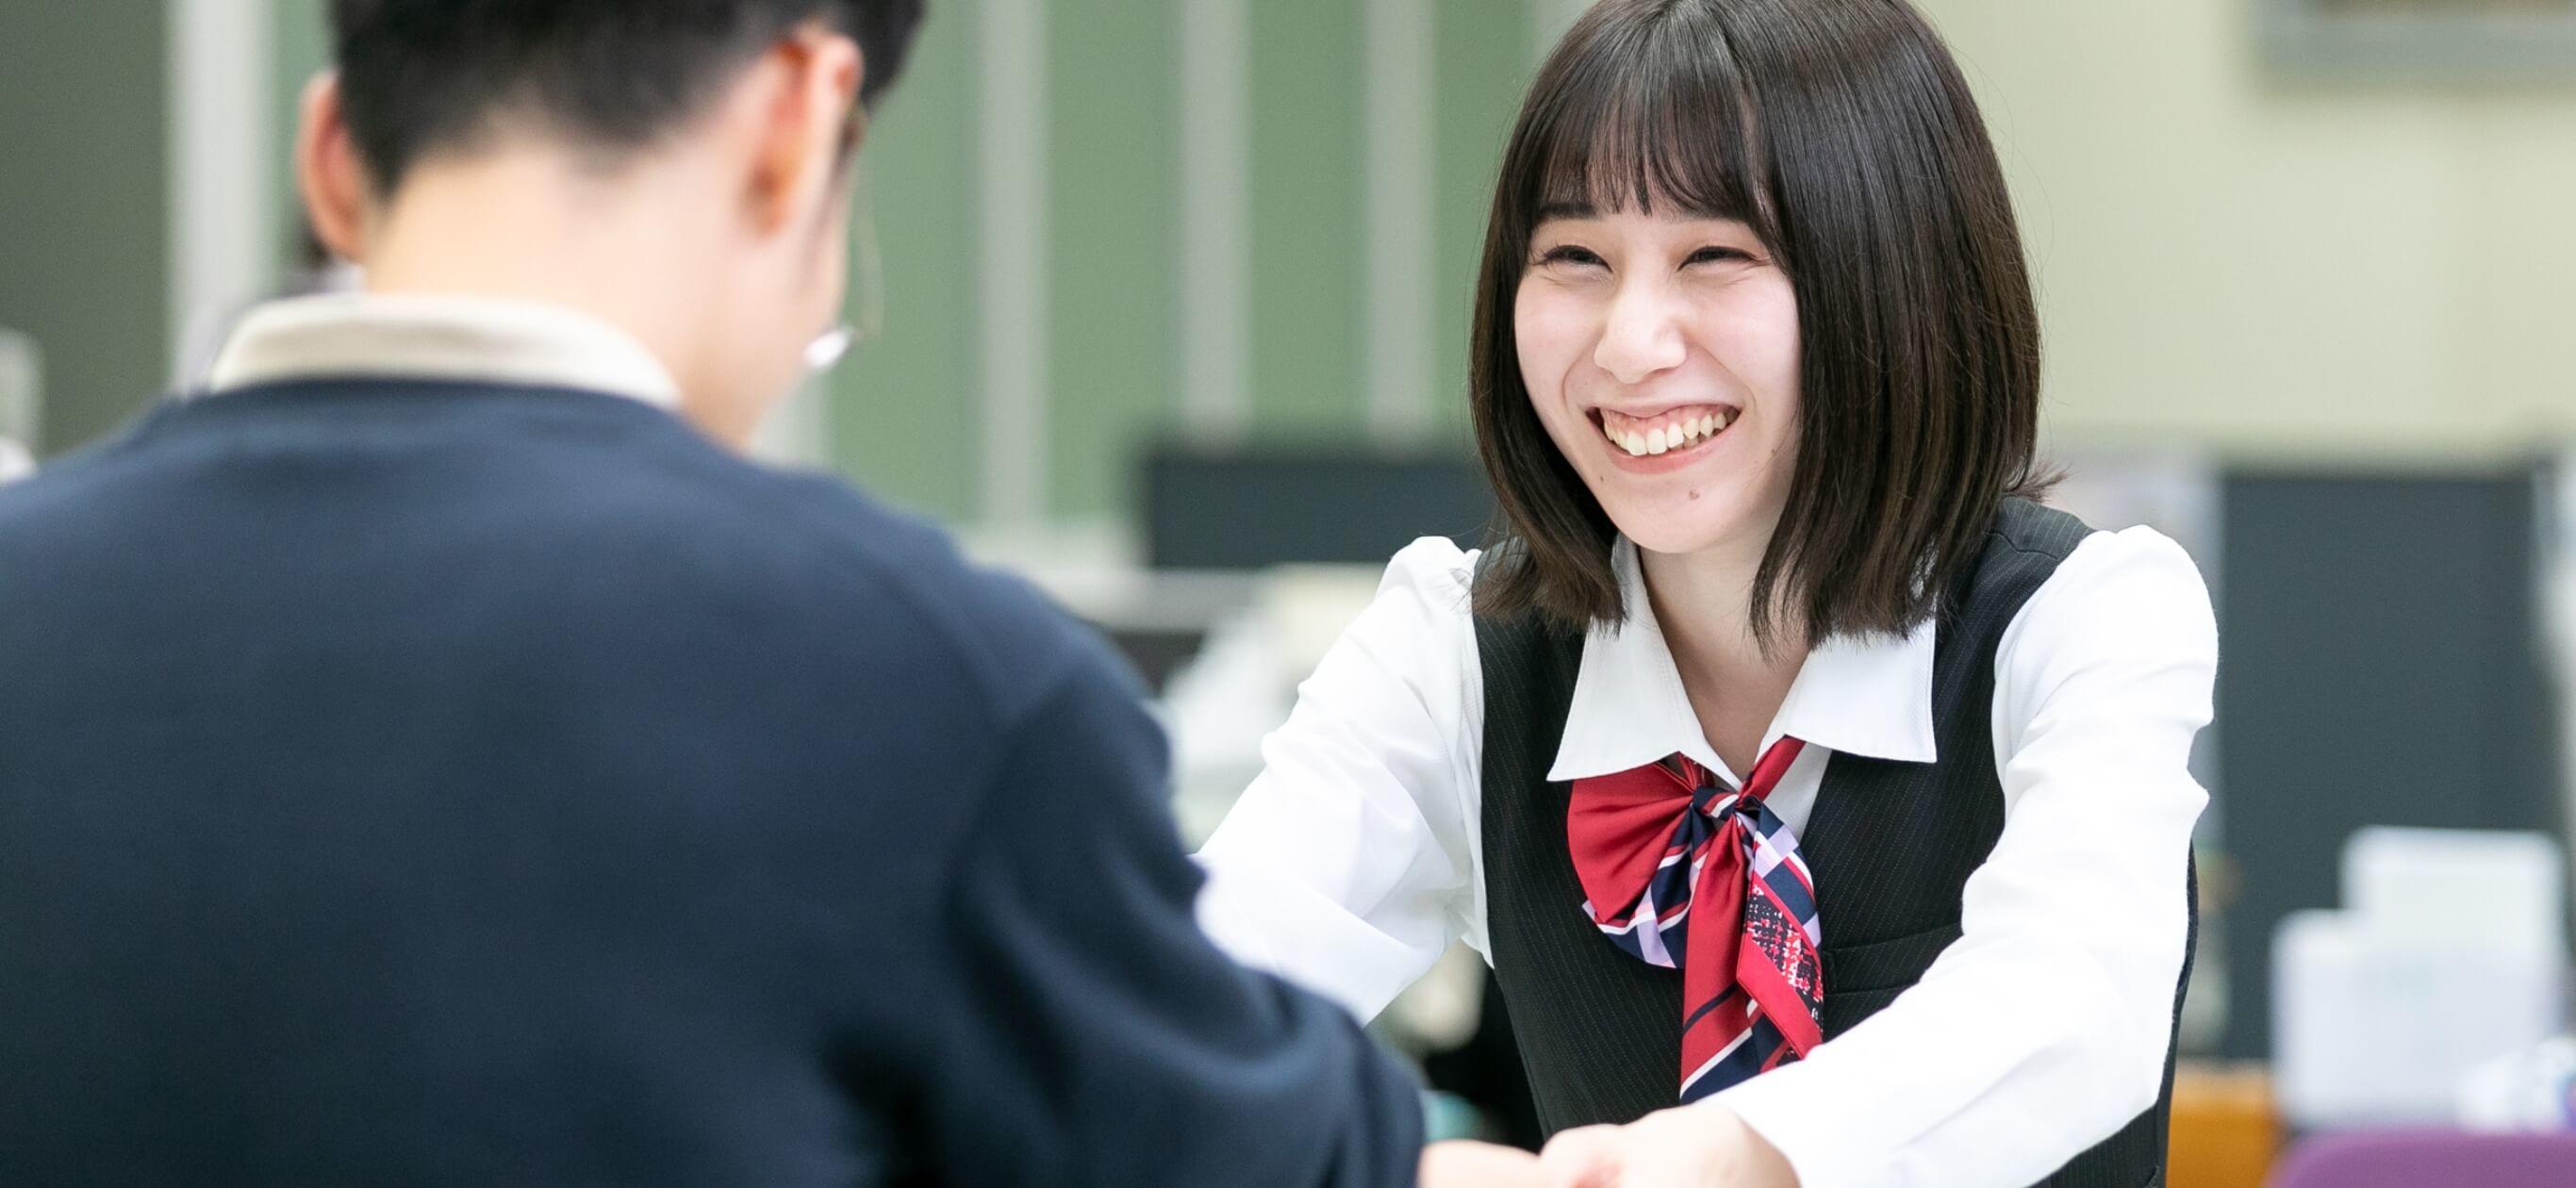 窓口で笑顔で接客をする長野県信連貯金為替の女性職員